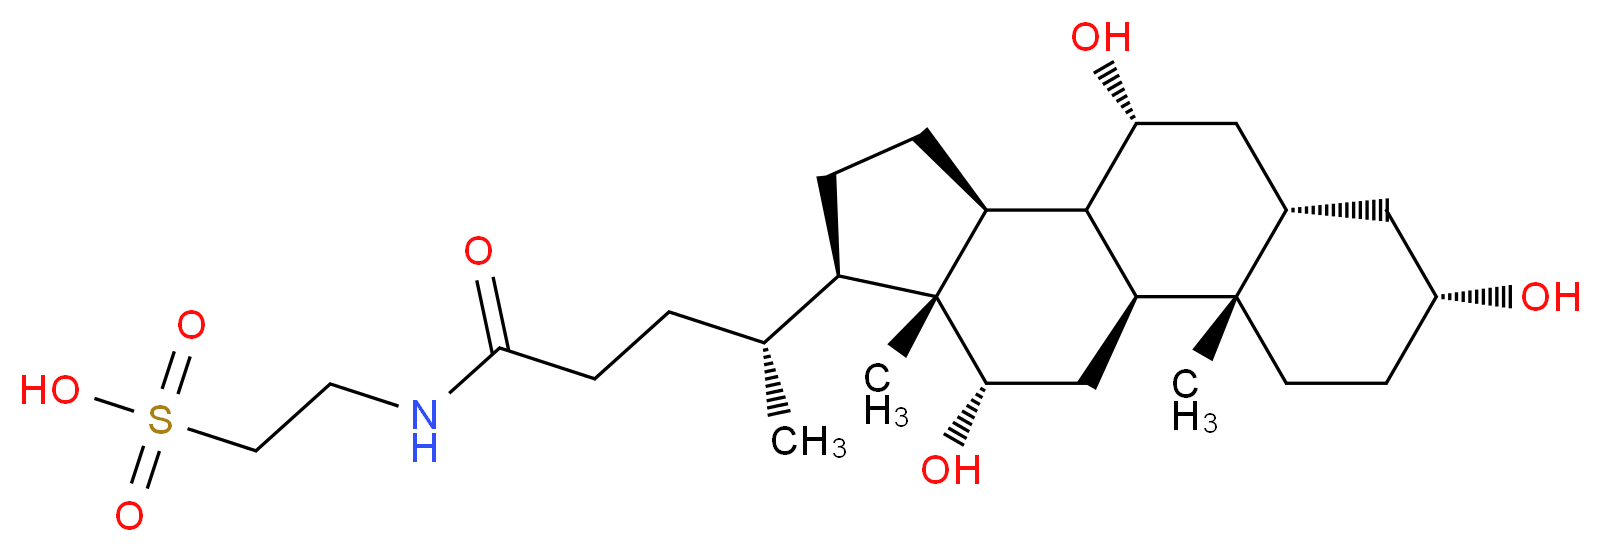 81-24-3 molecular structure